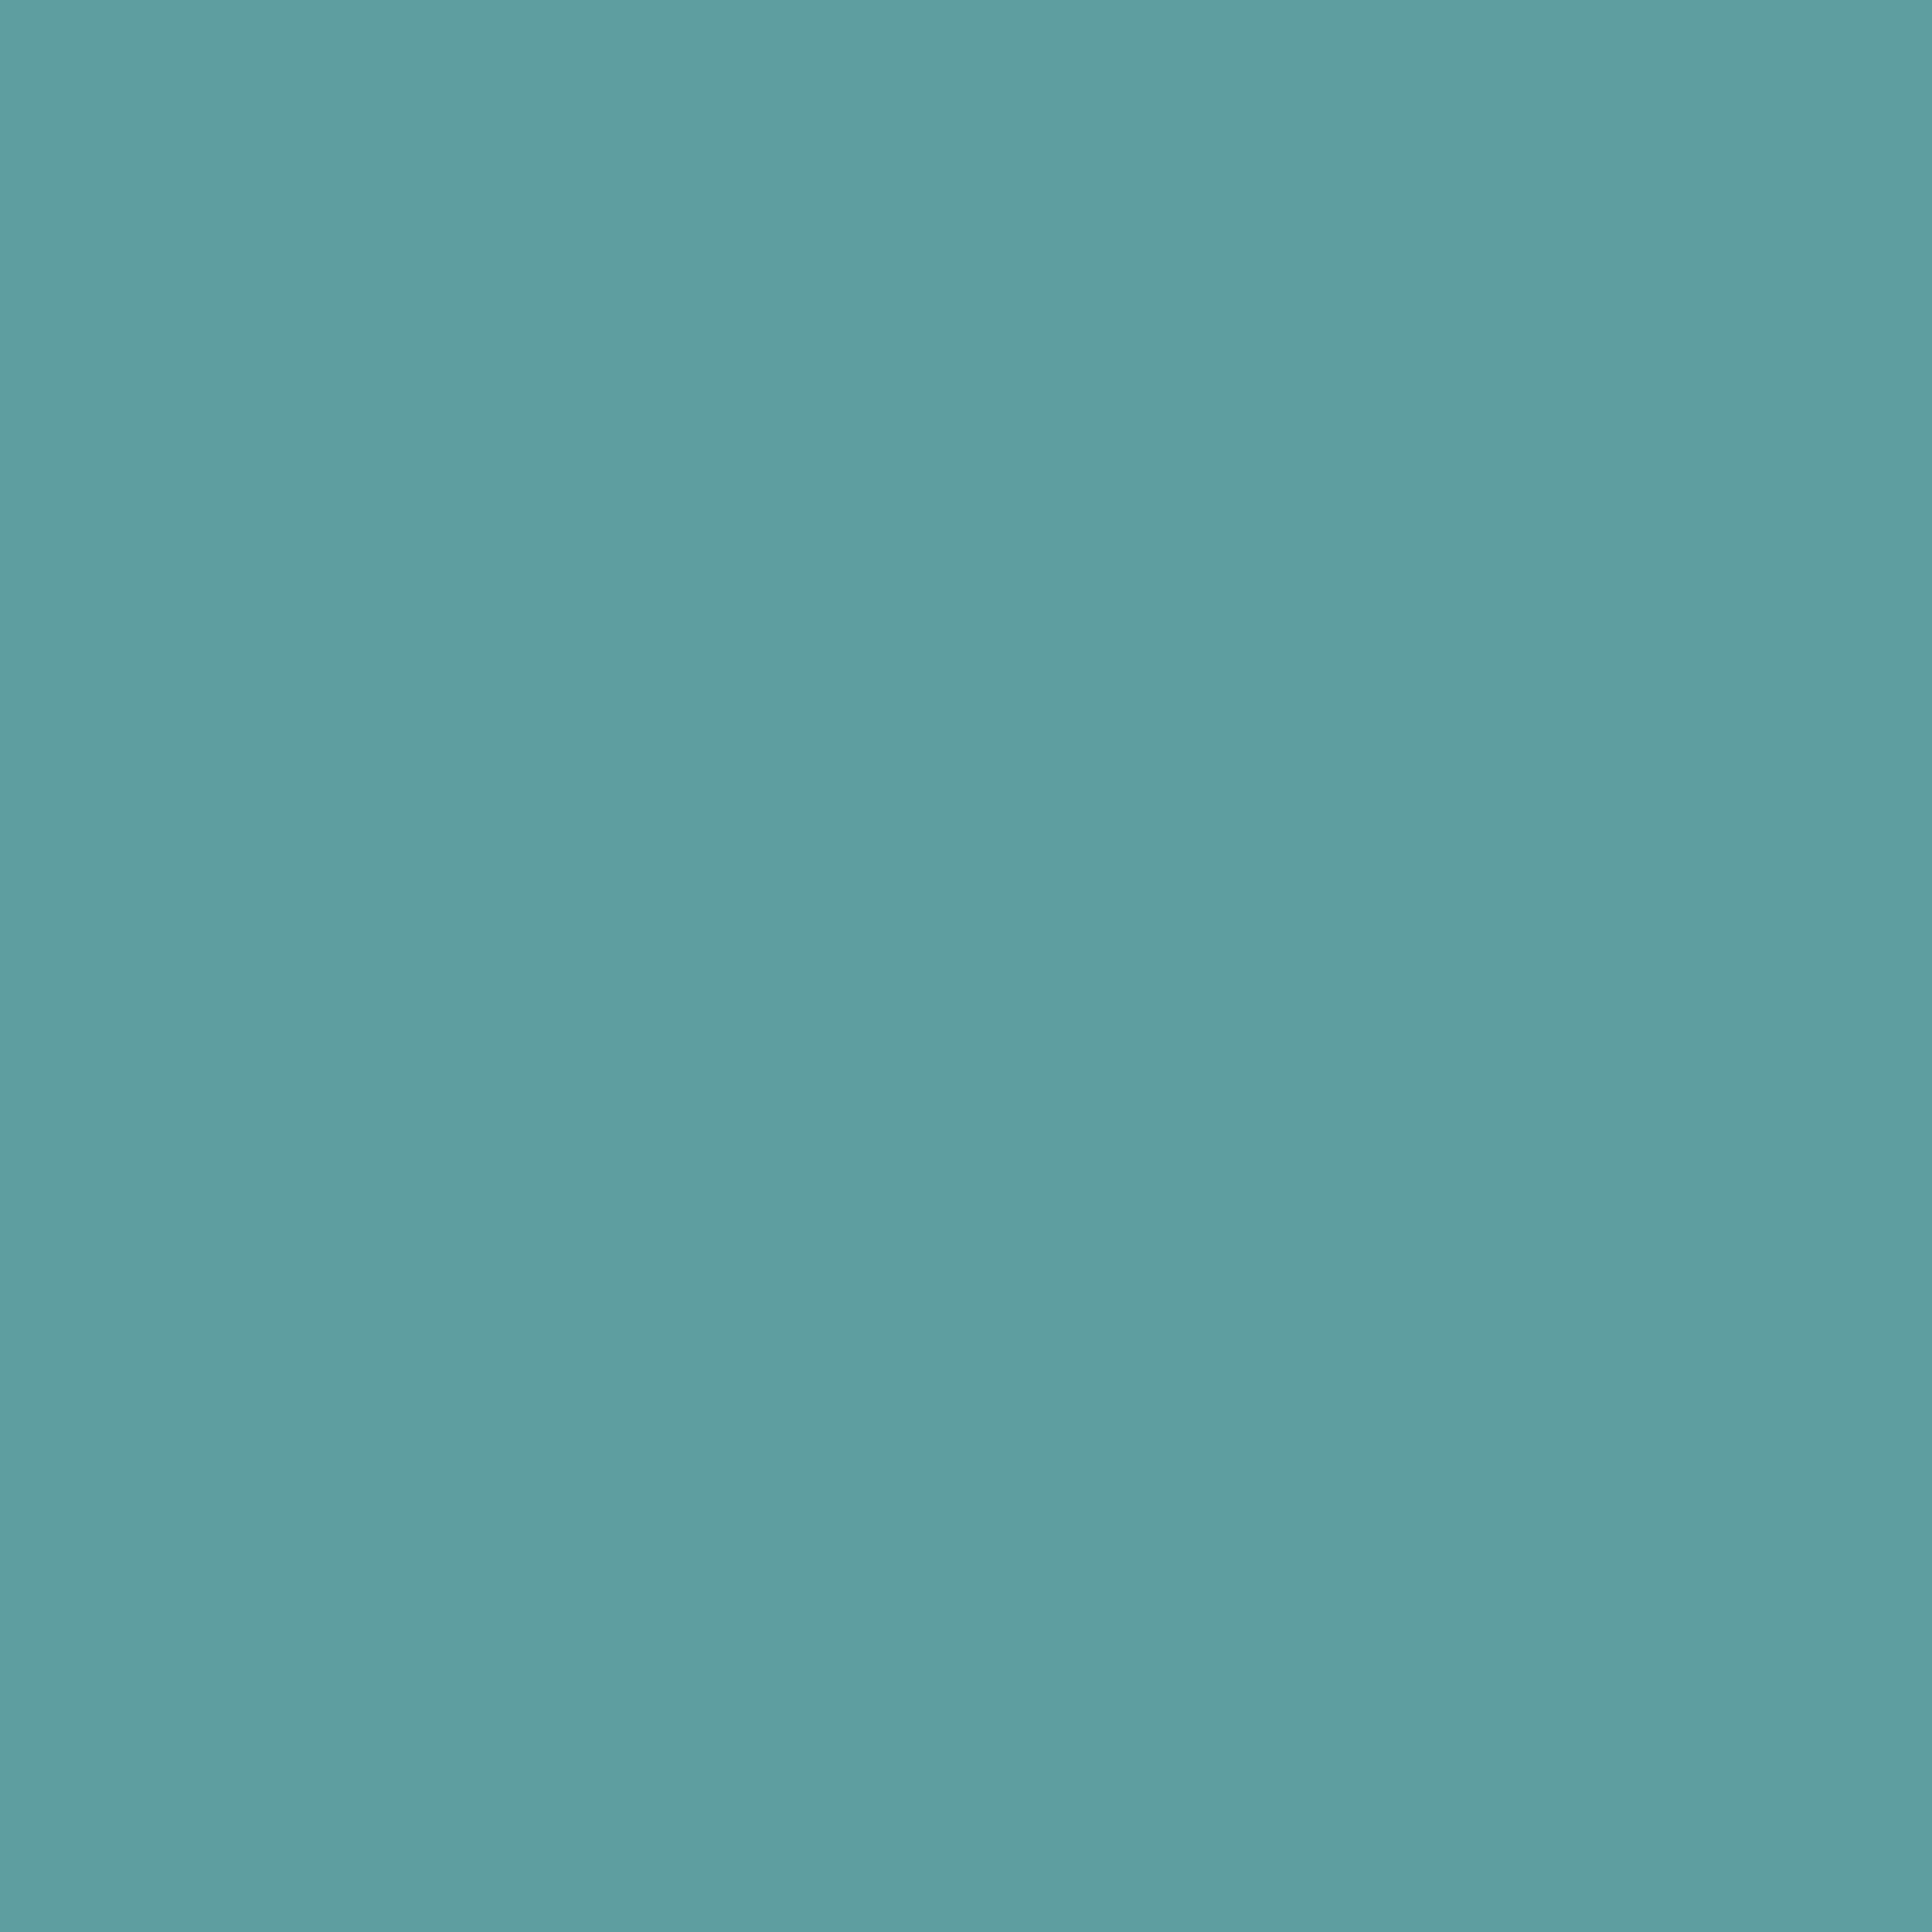 2048x2048 Cadet Blue Solid Color Background